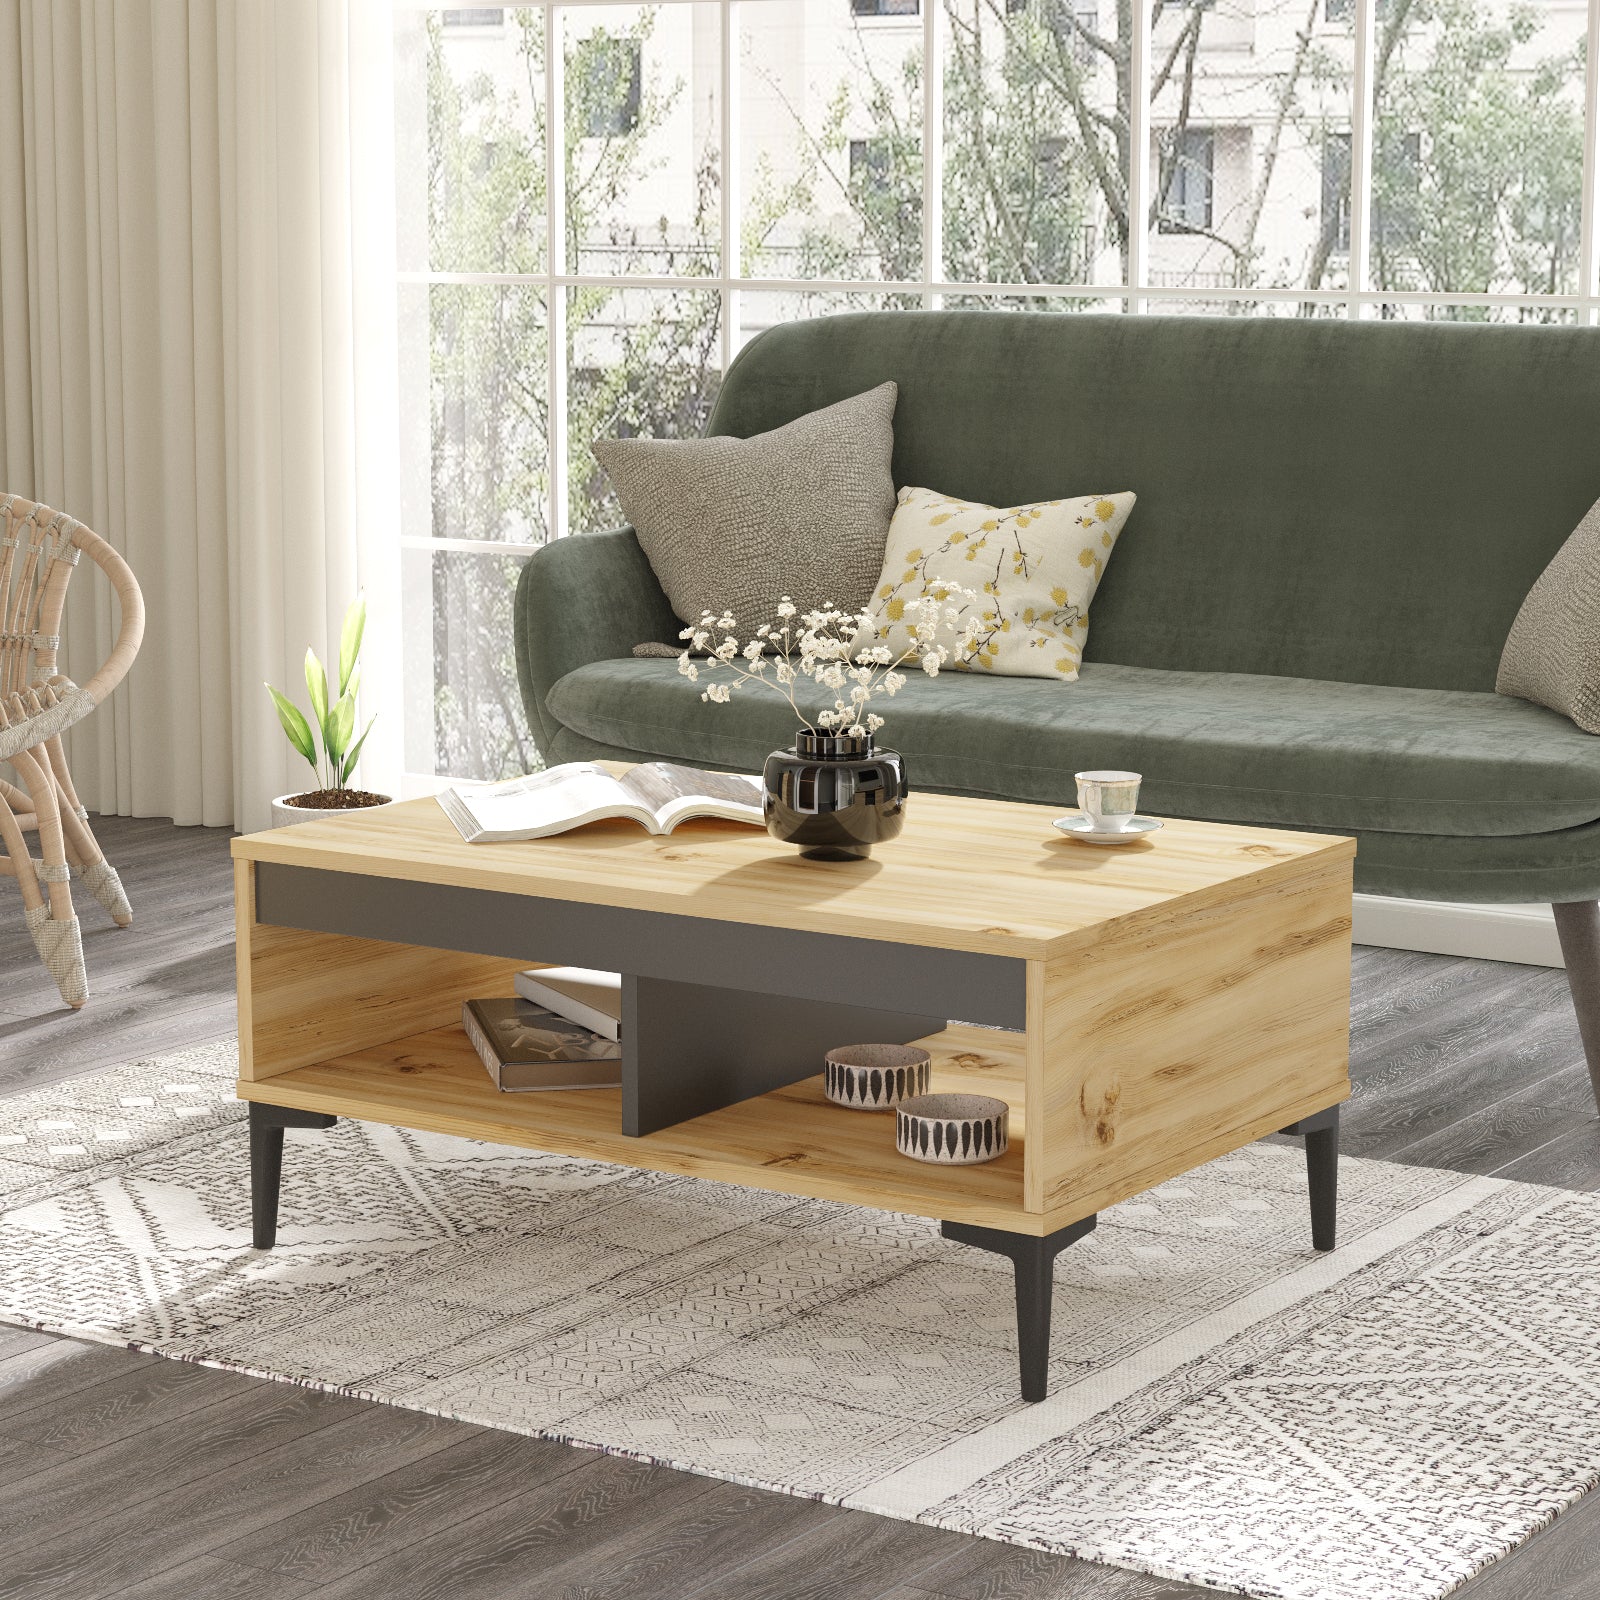 Design intérieur avec table basse 'ALIZÉ' en bois clair ajoutant une touche moderne chez LeBoMeuble